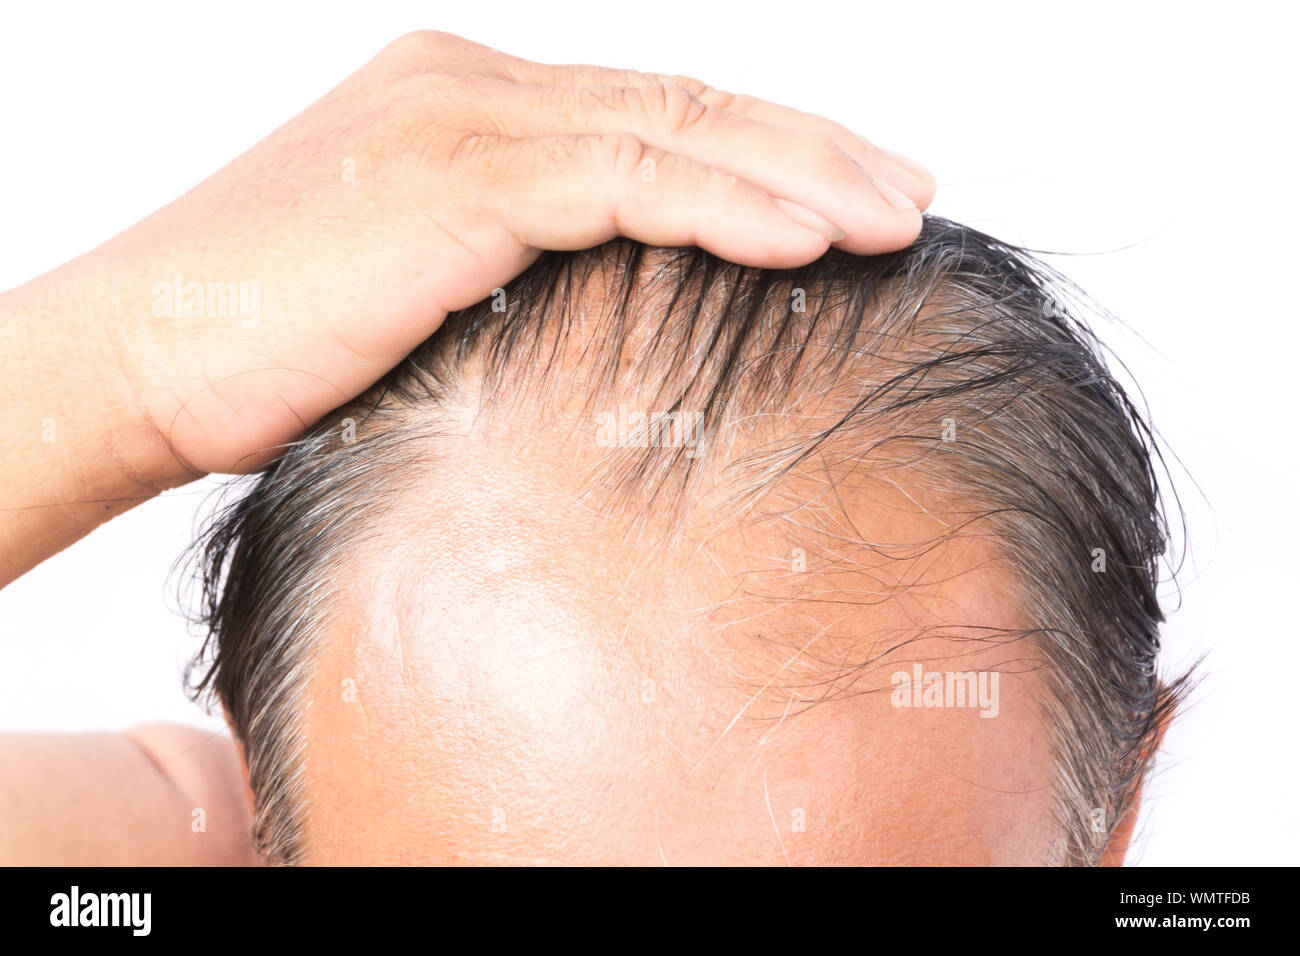 Imagen recortada del hombre con cabello gris contra el fondo blanco. Foto de stock